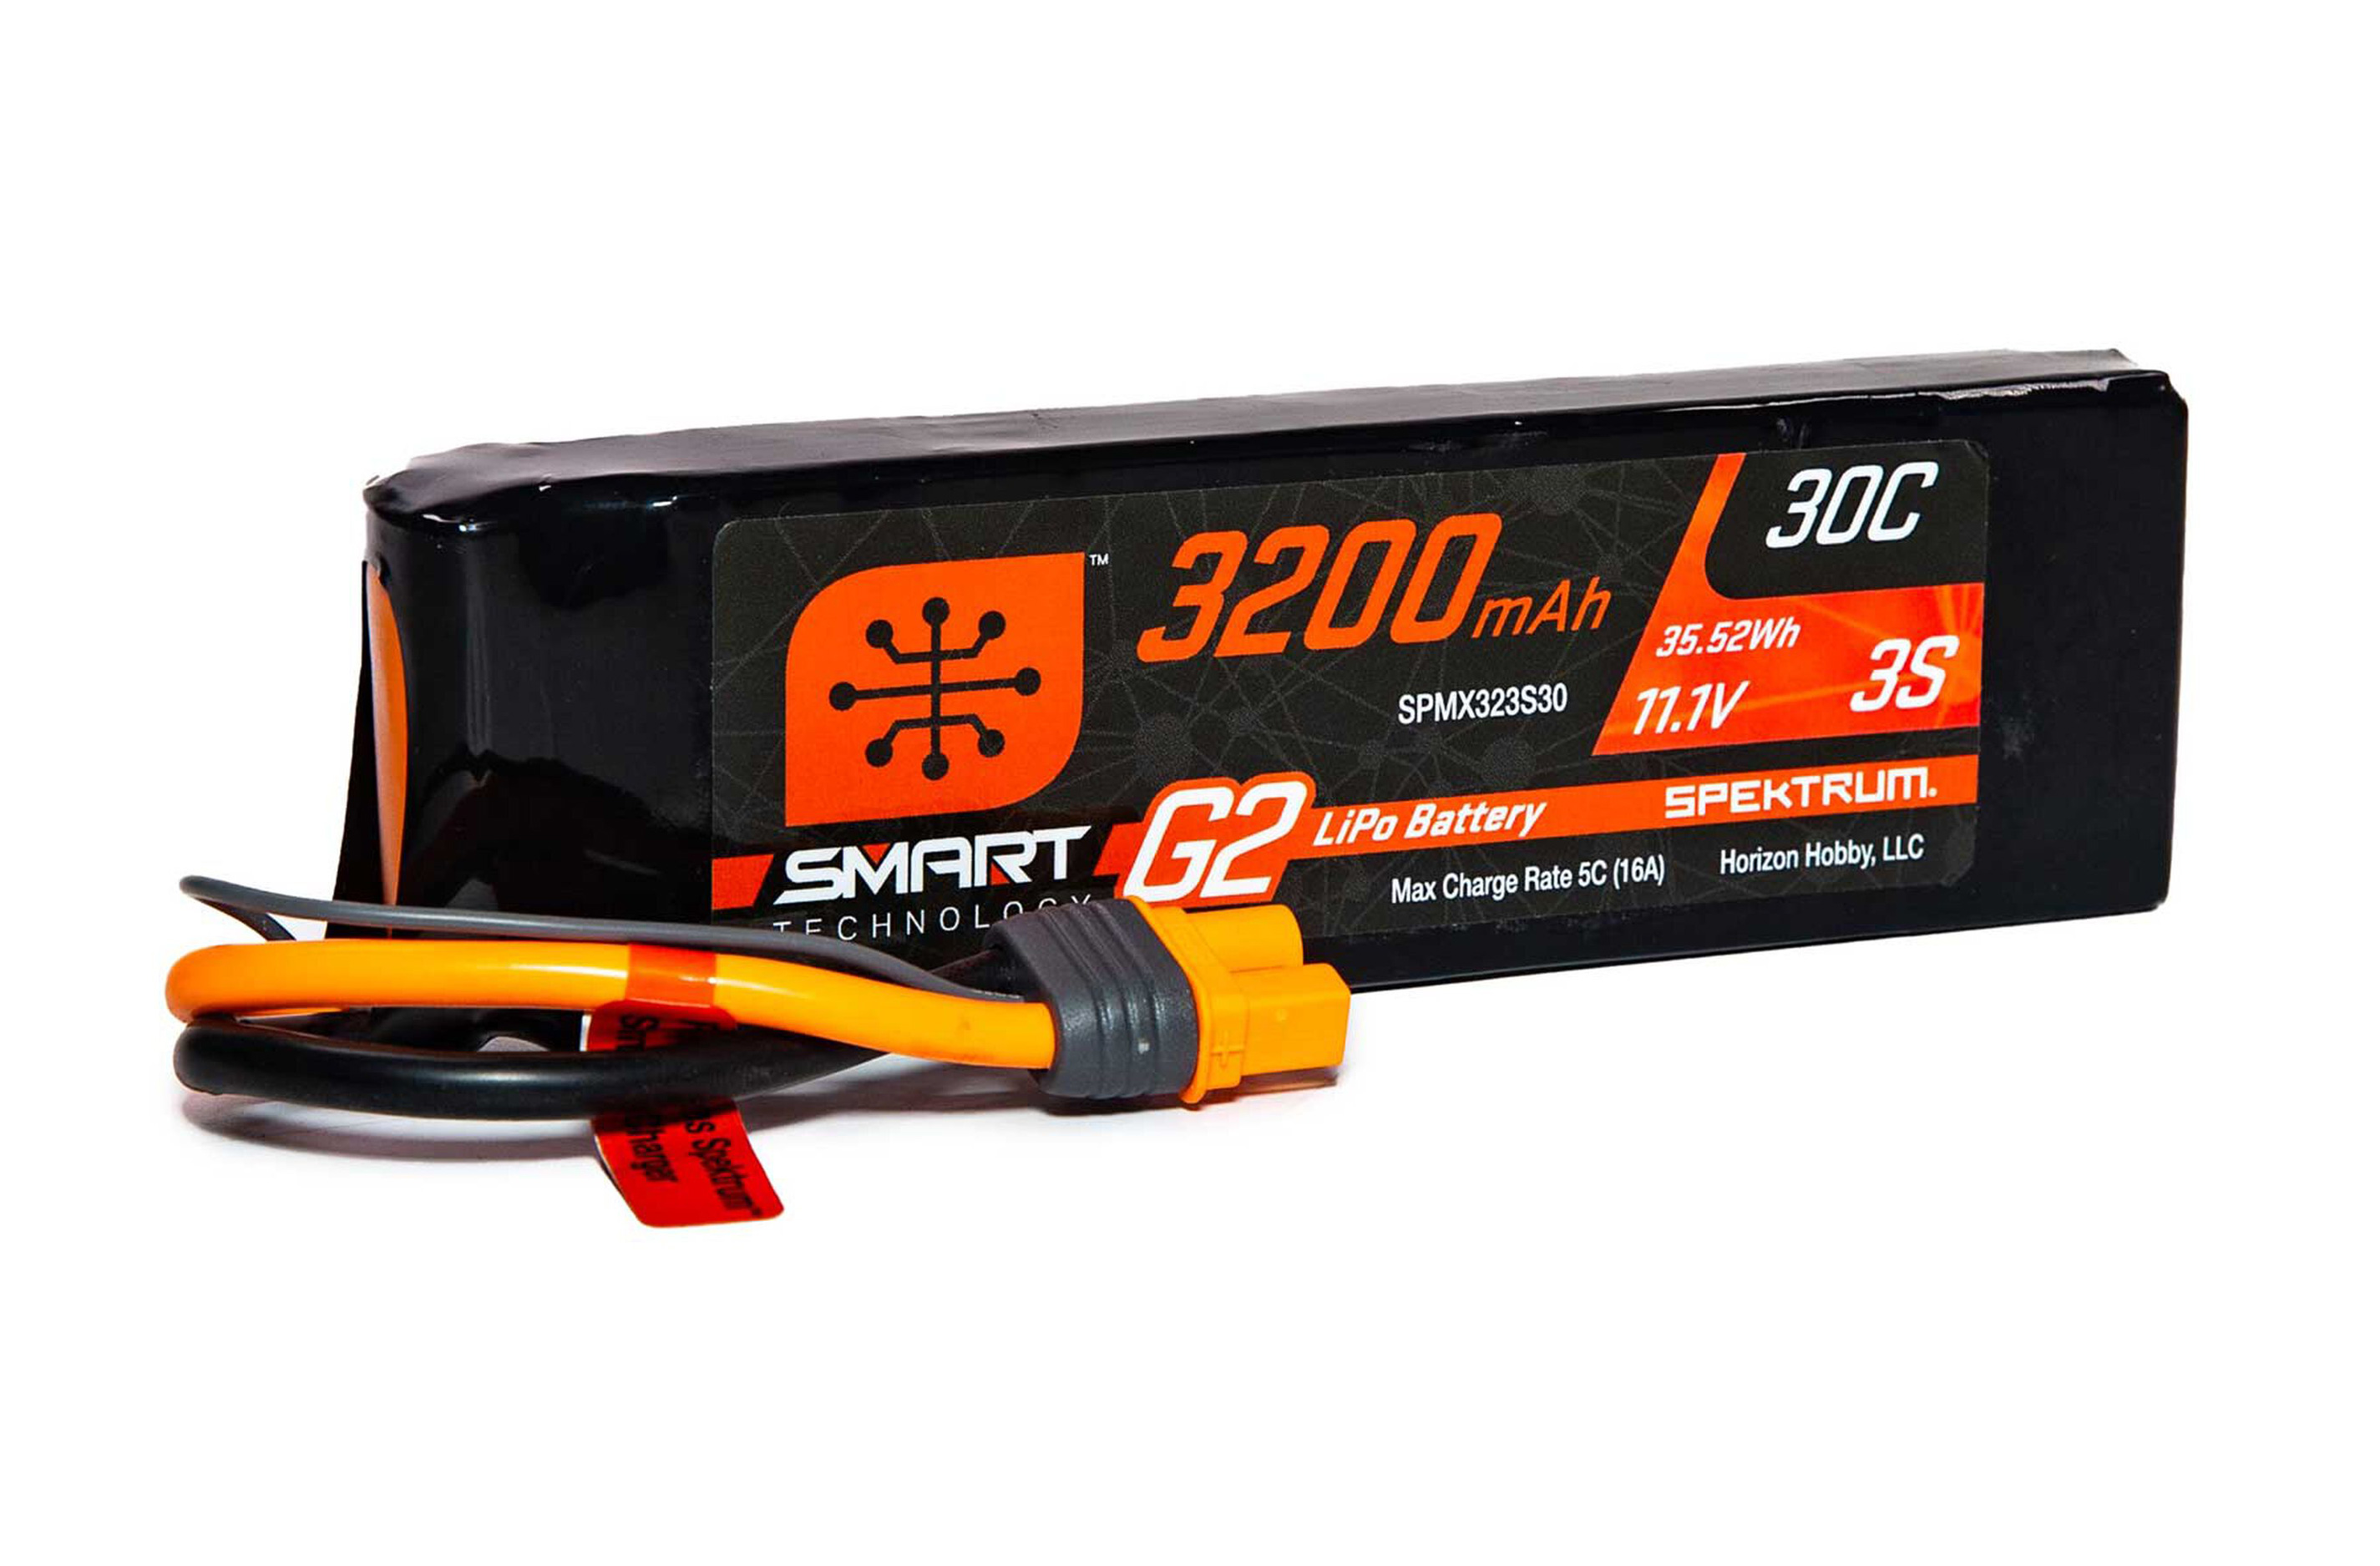 SPMX323S30 Spektrum 11.1V 3200mAh 3S 30C Smart G2 LiPo Battery IC3